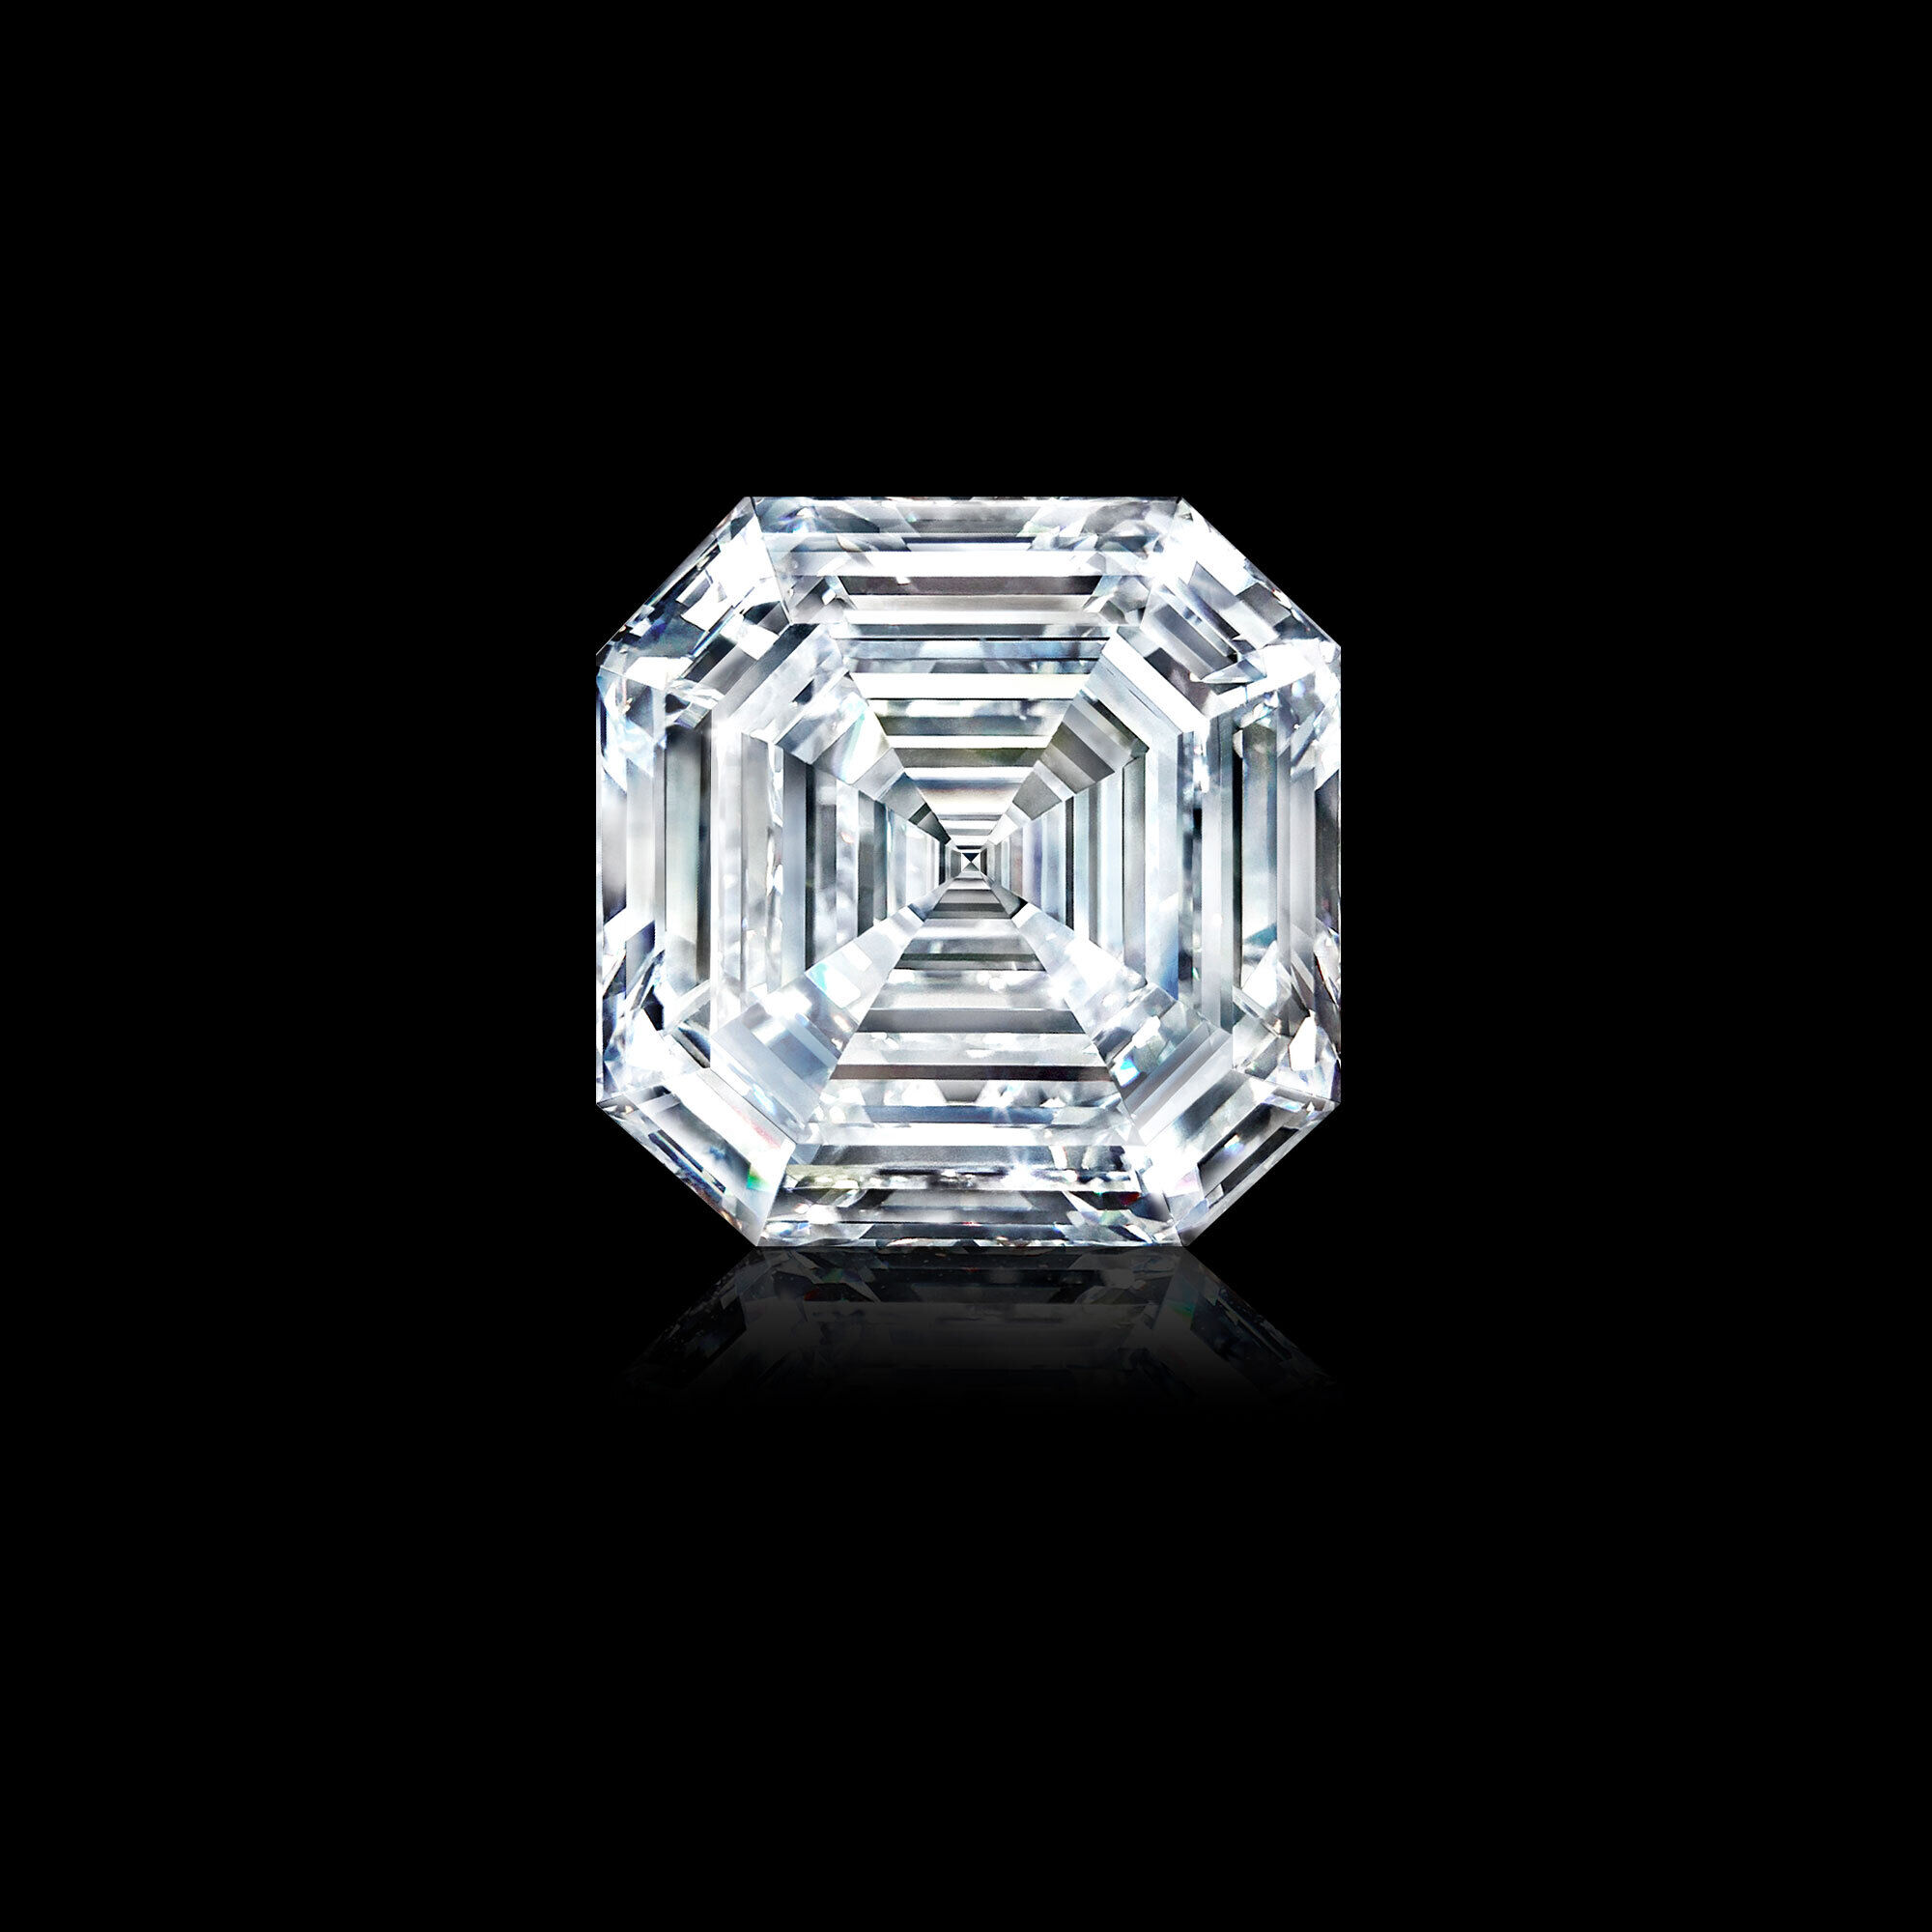 The 302.37 carat Graff Lesedi La Rona square emerald cut diamond